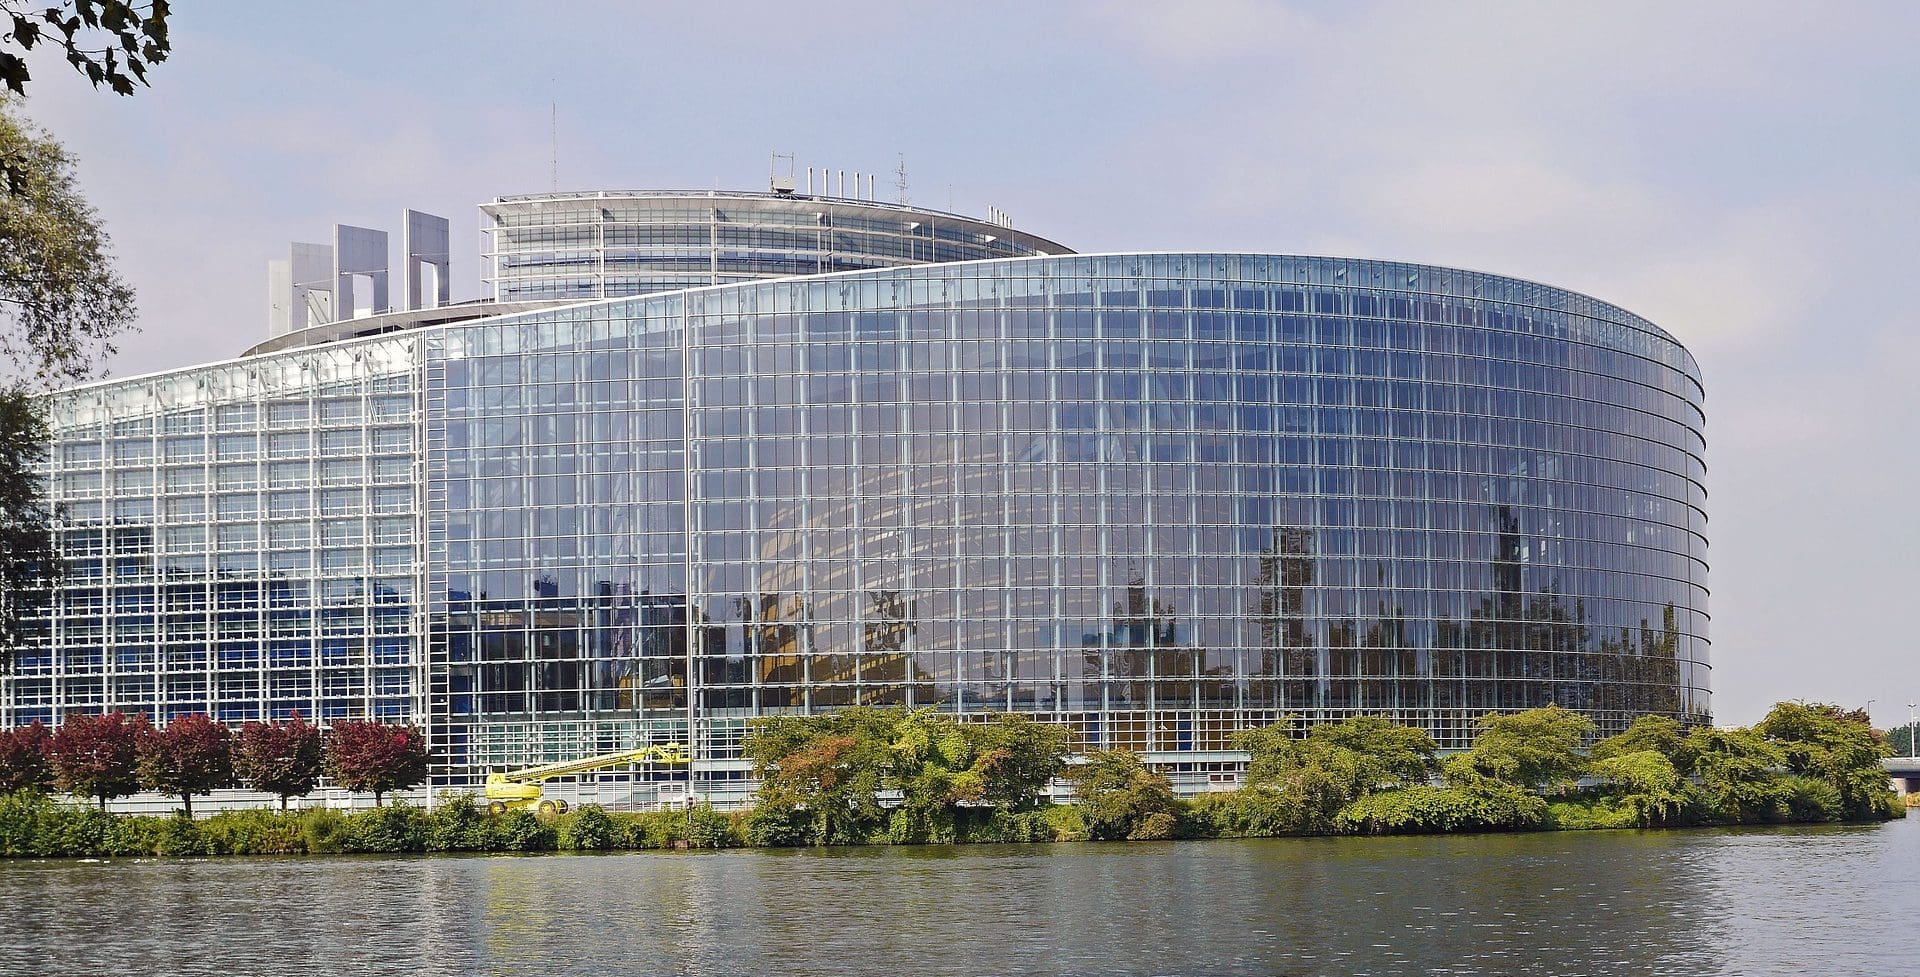 Европарламент в Страсбурге